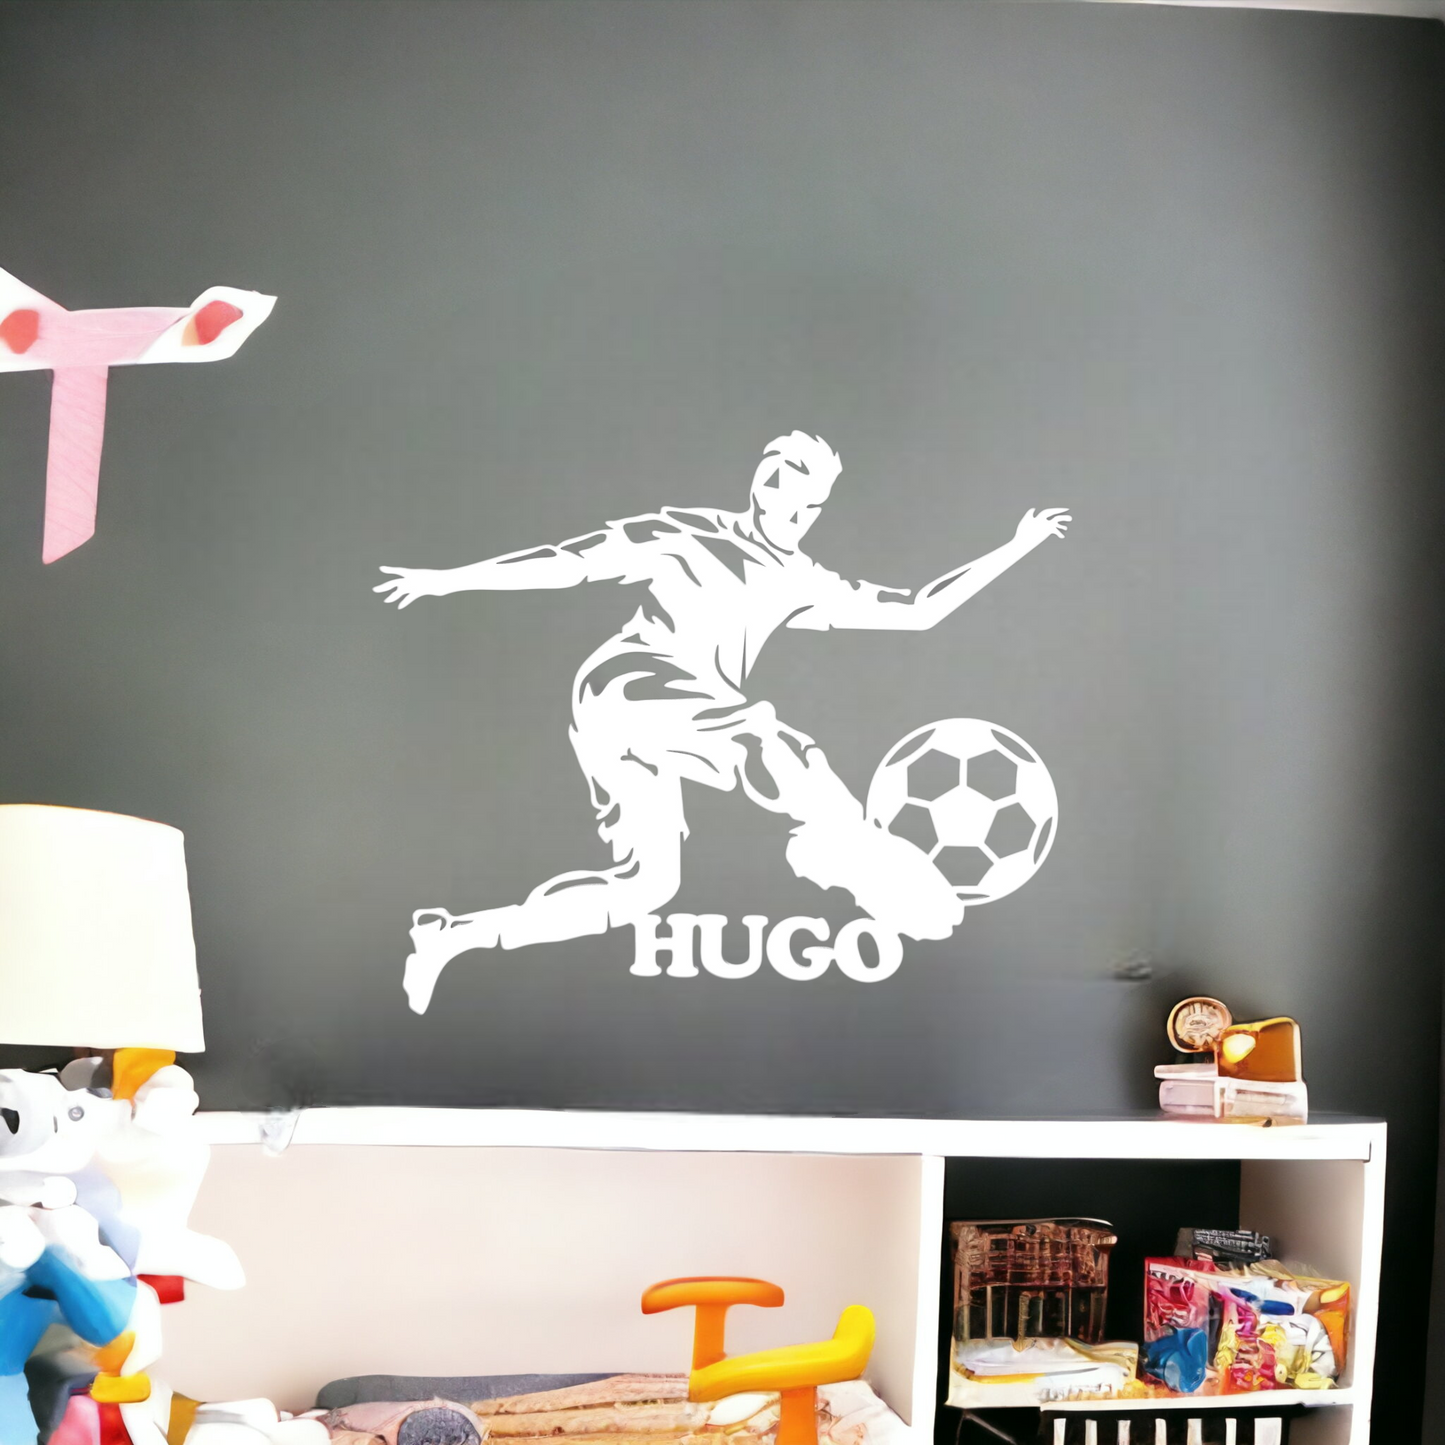 Décoration chambre enfant Personnalisée Footballeur avec Prénom – PersoDeco